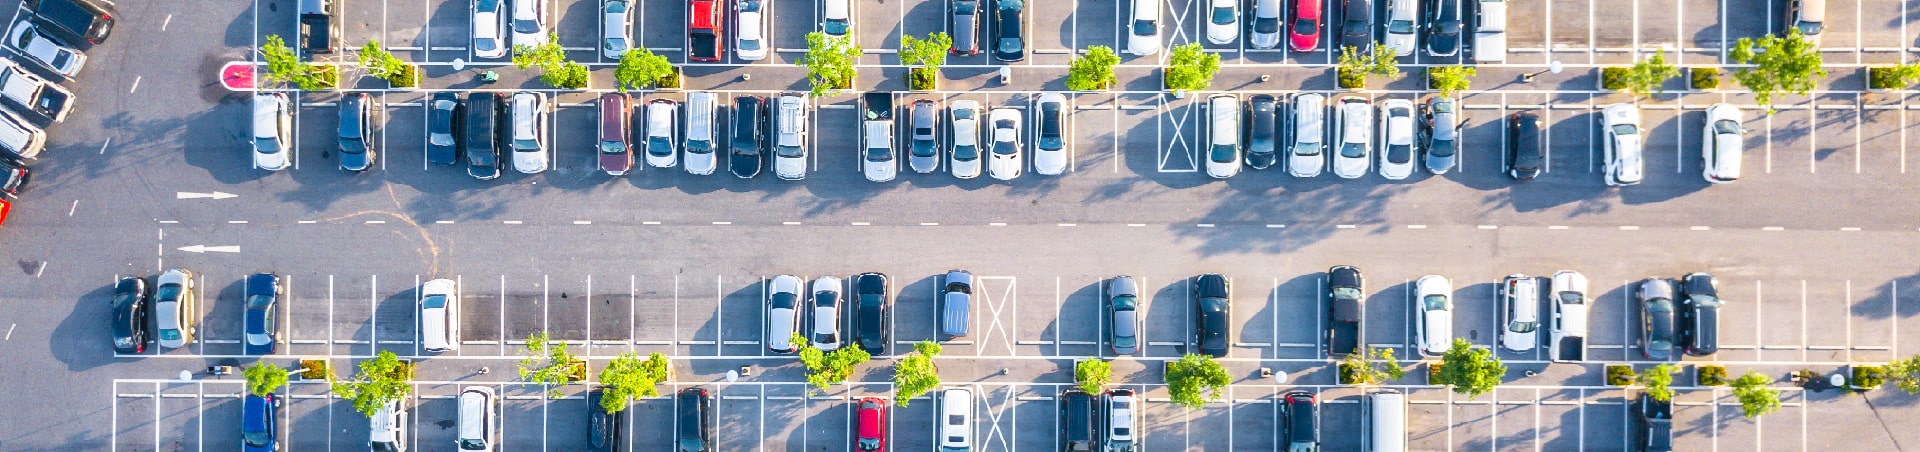 Smart Parking solution